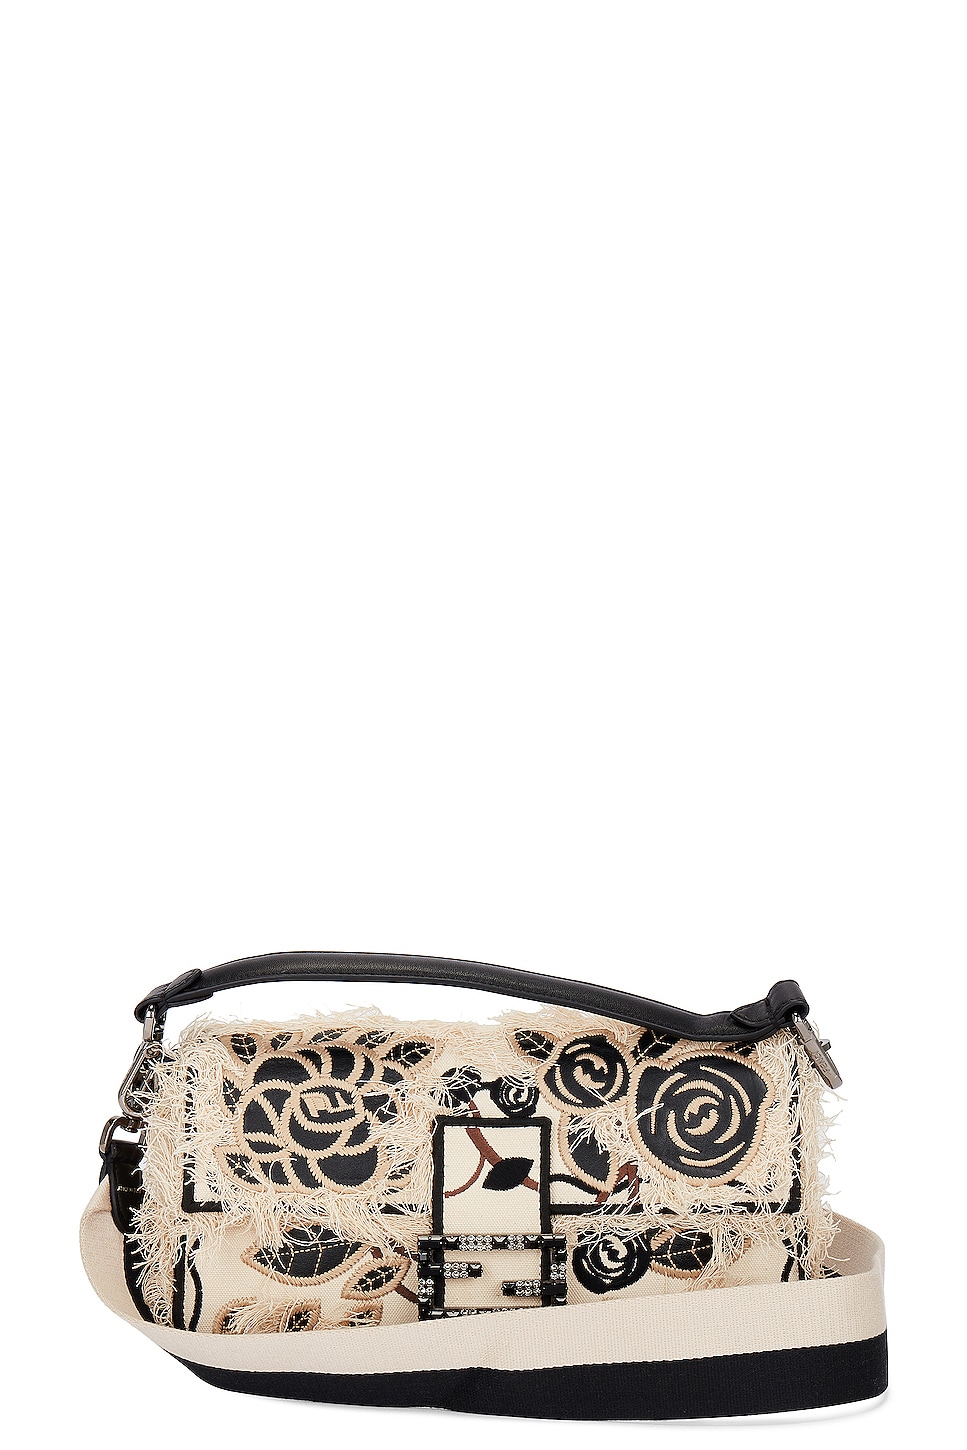 Fendi Floral Embroidered Baguette Bag in Ivory